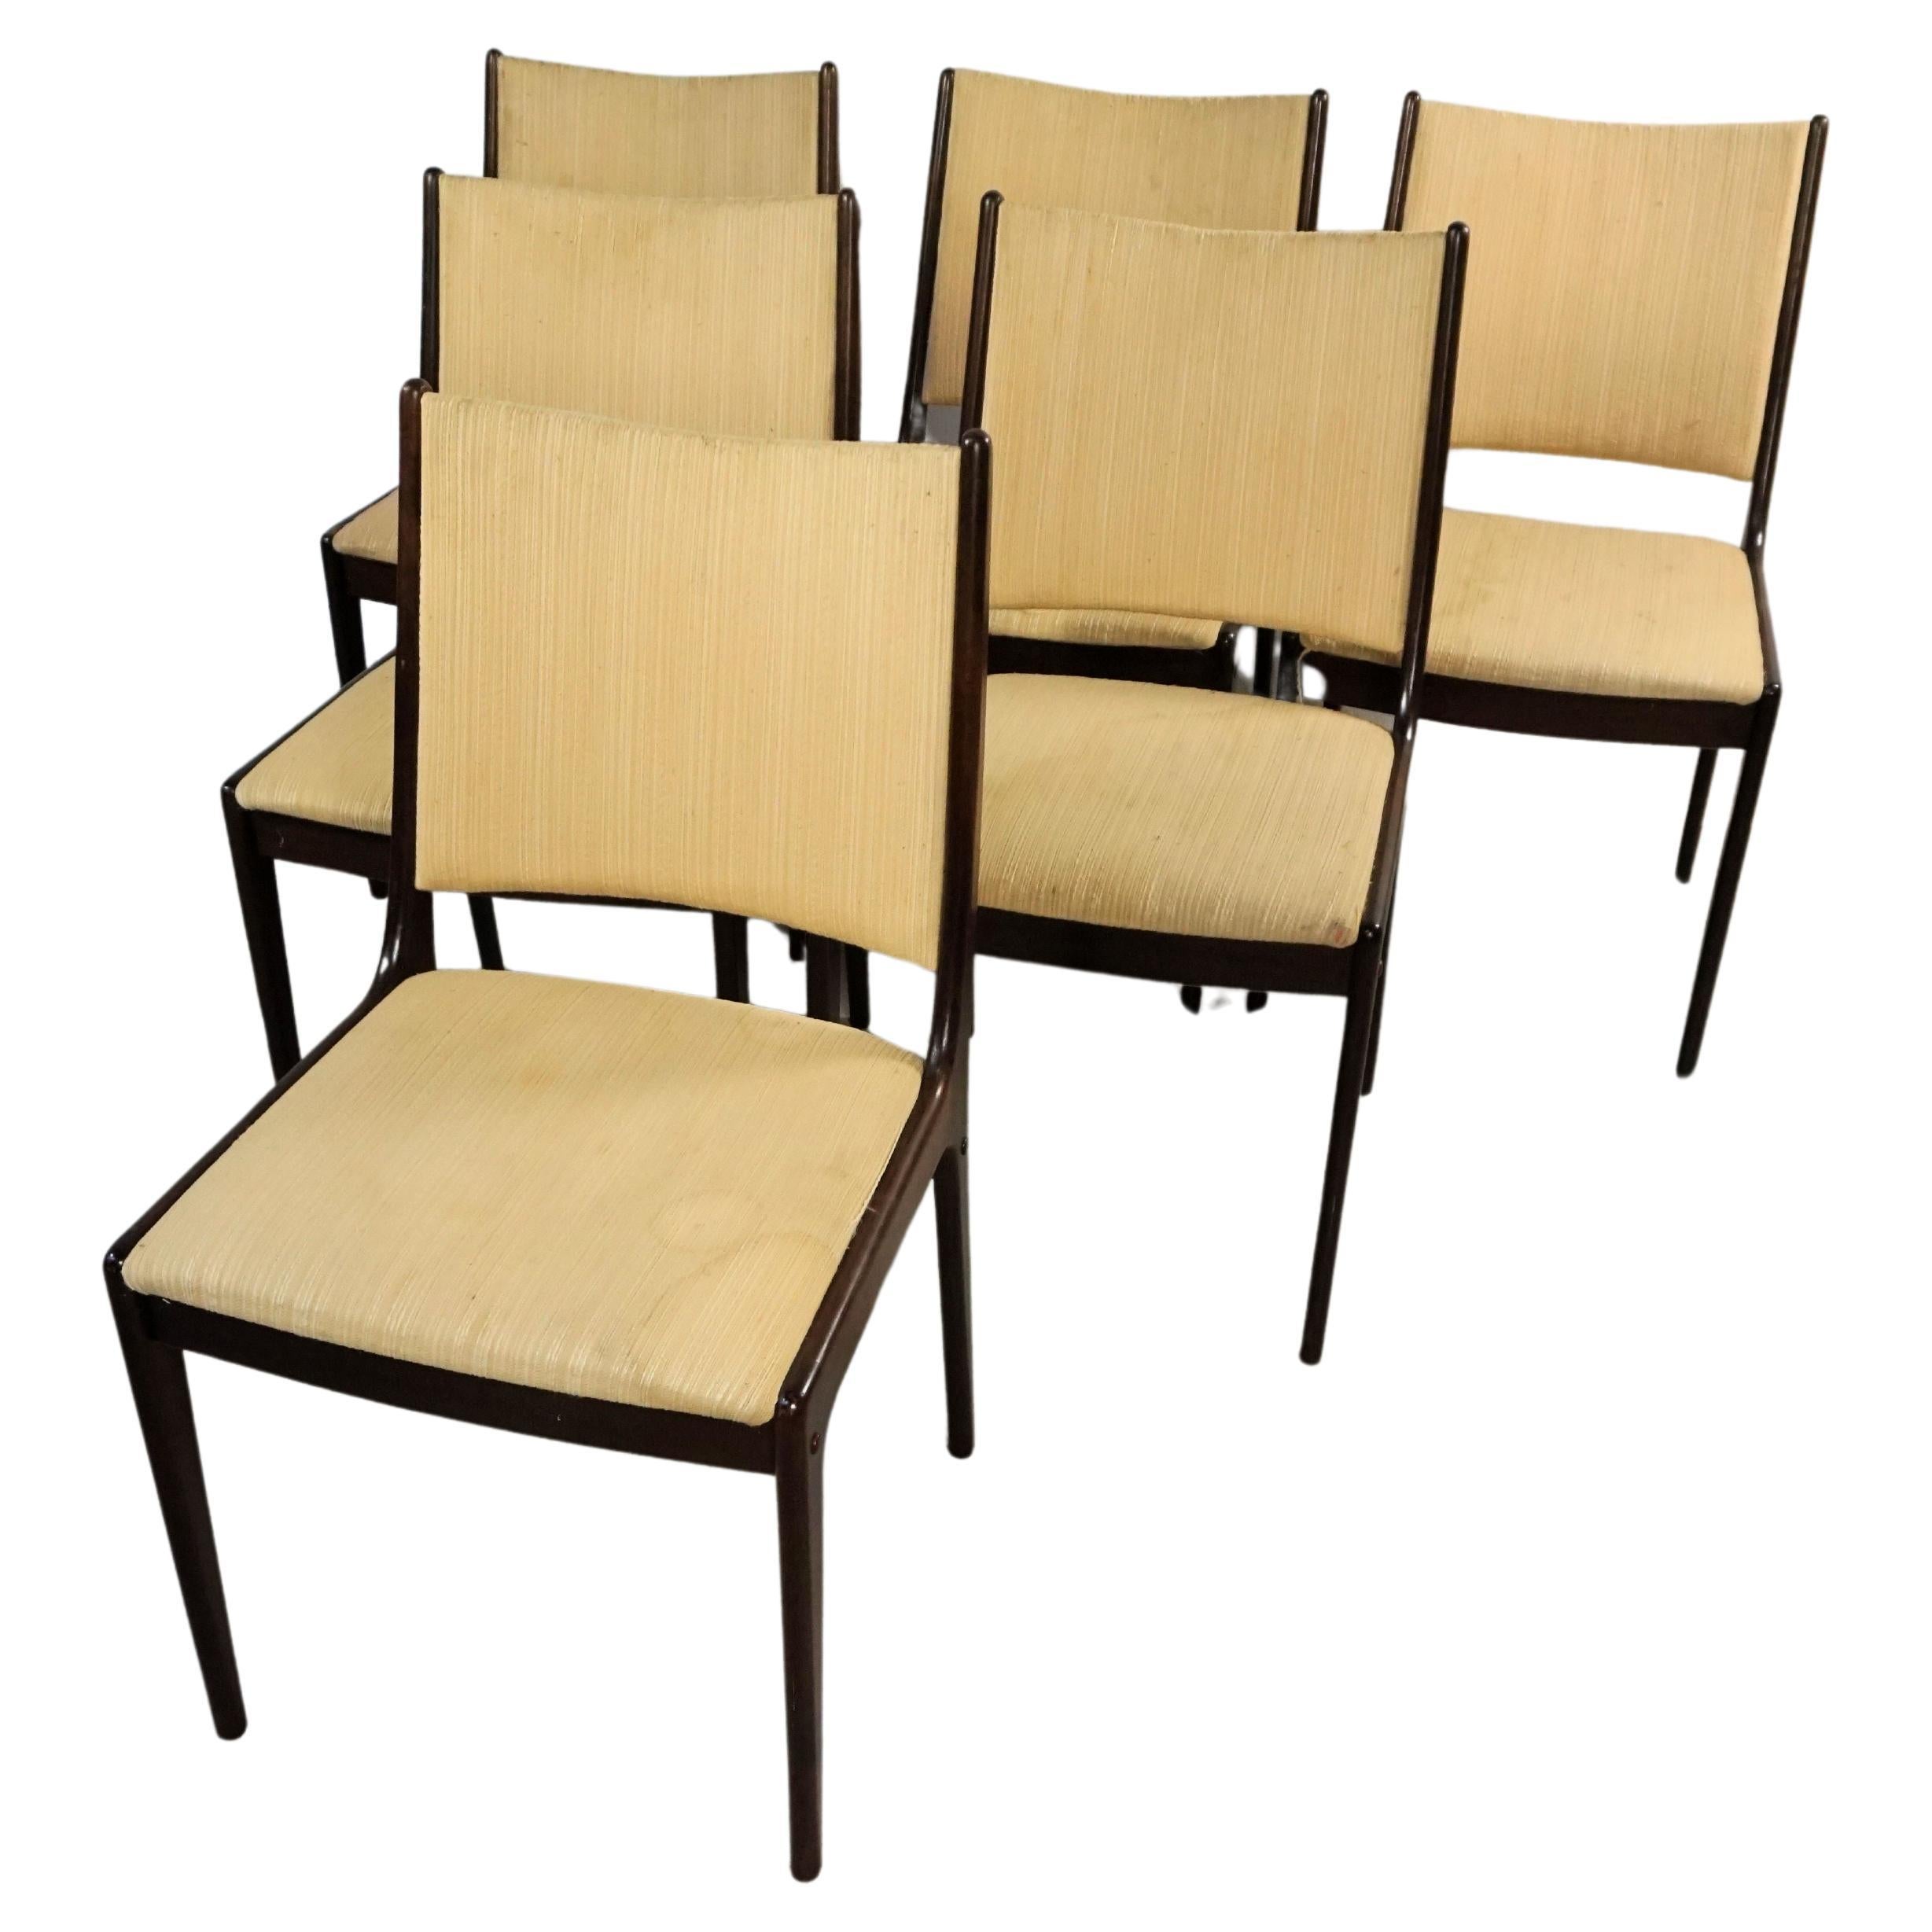 Six chaises de salle à manger Johannes Andersen restaurées en acajou, tapissées sur mesure incluses